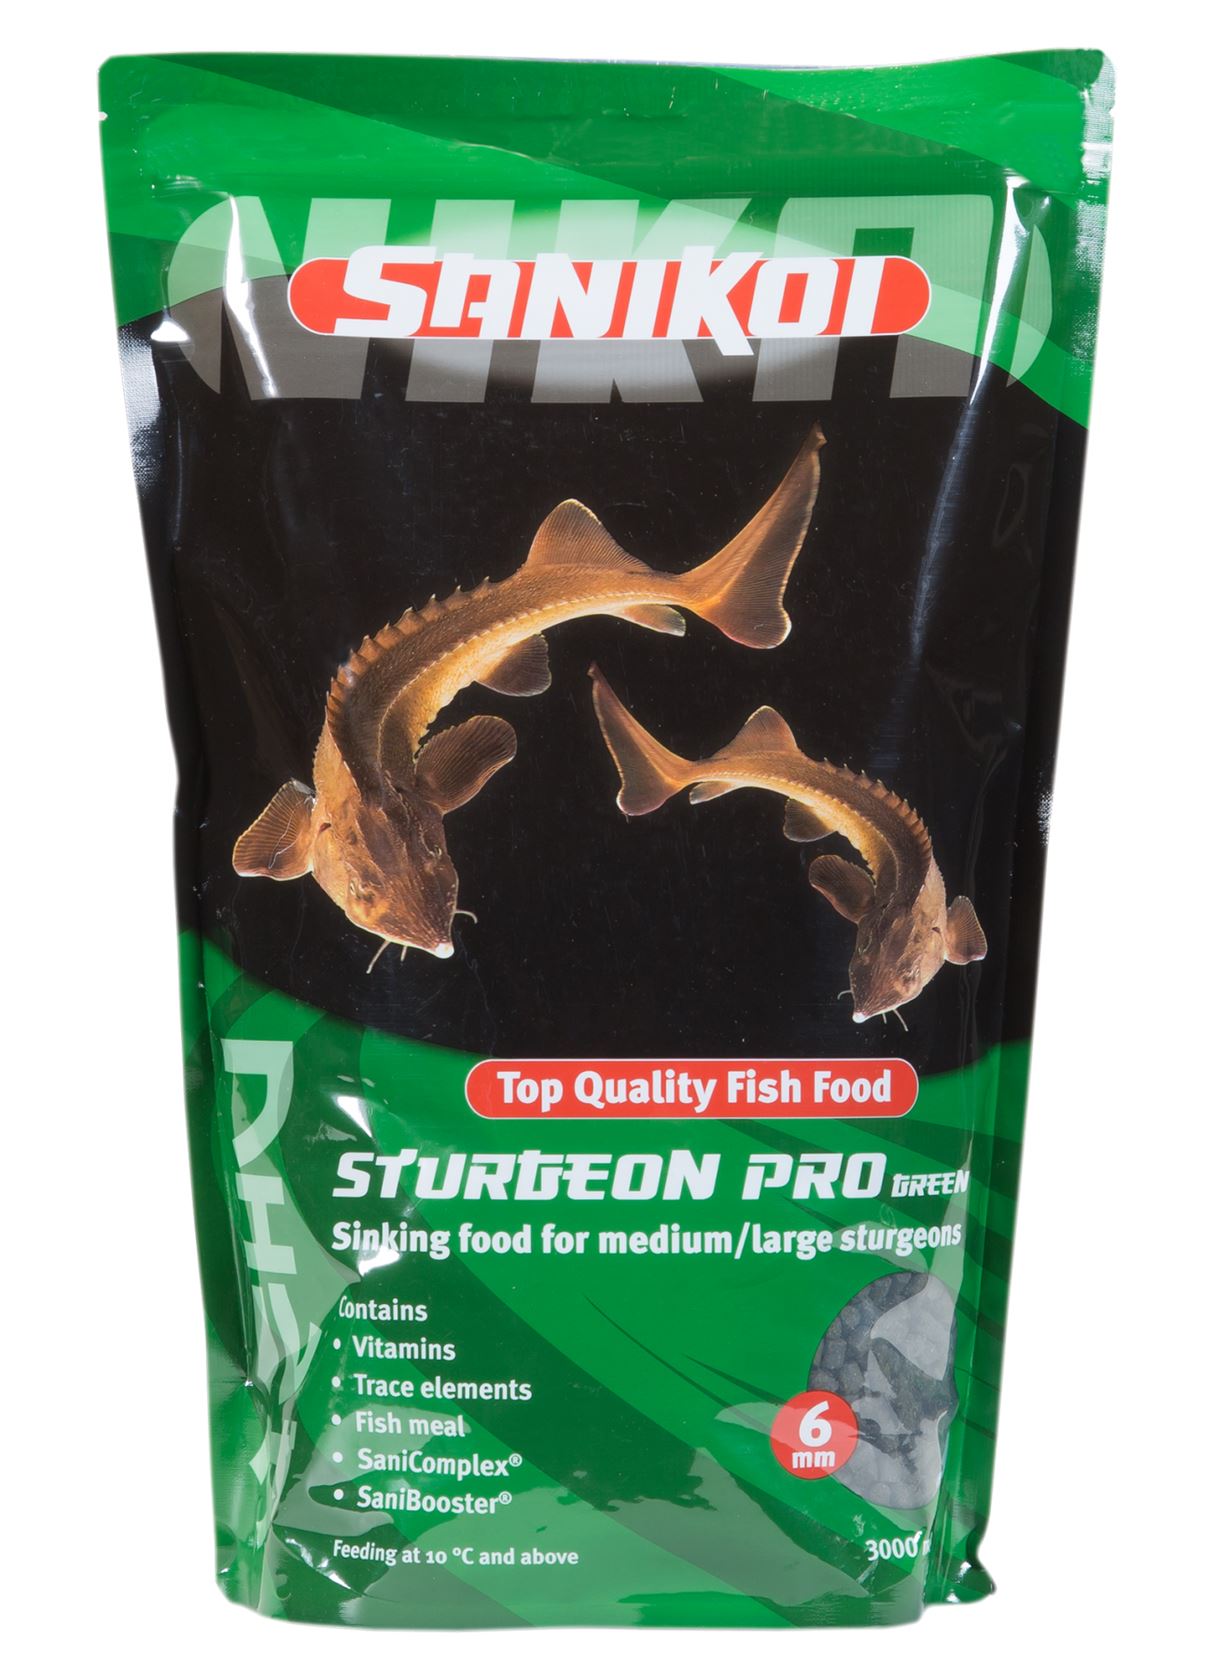 SaniKoi-Sturgeon-Pro-Green-6mm-3-l-zinkend-steurvoer-met-voedingsupplementen